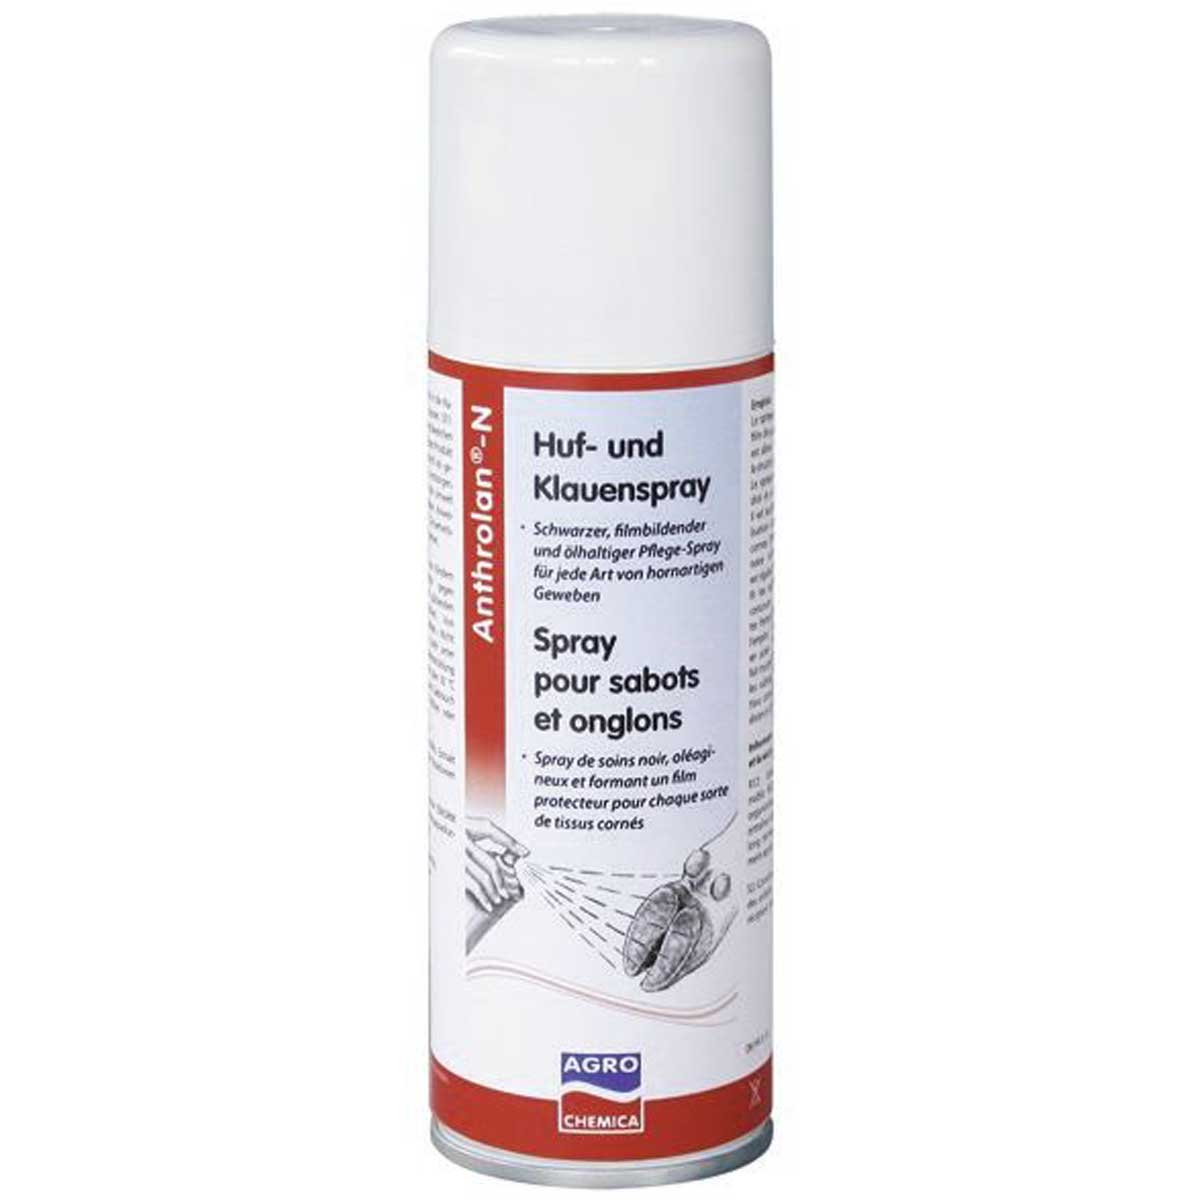 Anthrolan Spray per zoccoli e unghioni 200 ml